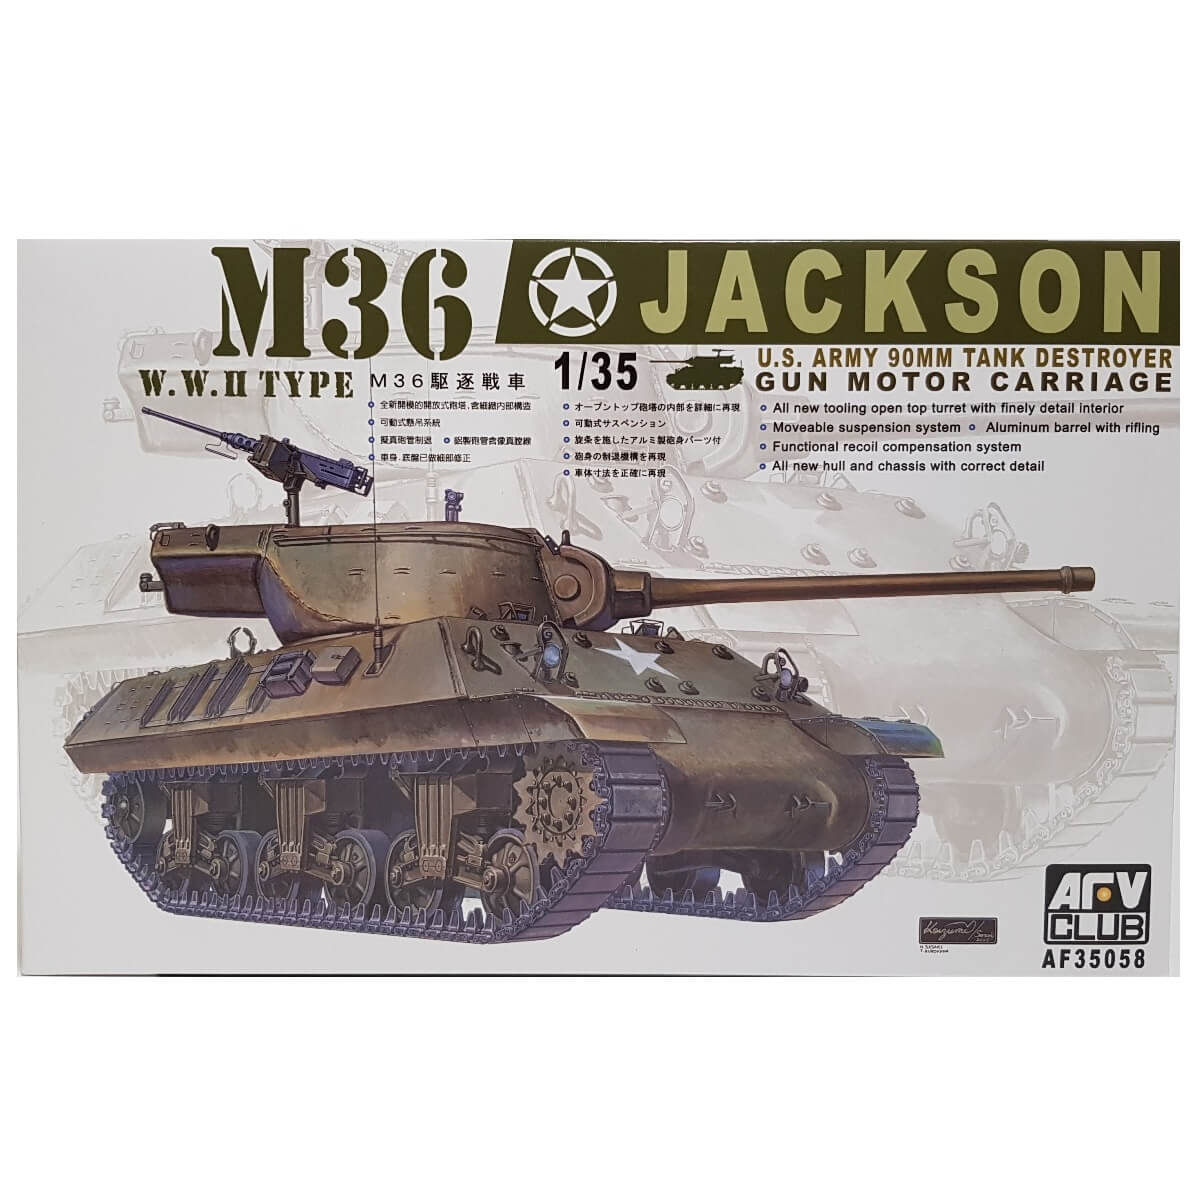 1:35 US Army M36 Jackson 90mm Tank Destroyer Gun Motor Carriage - AFV CLUB